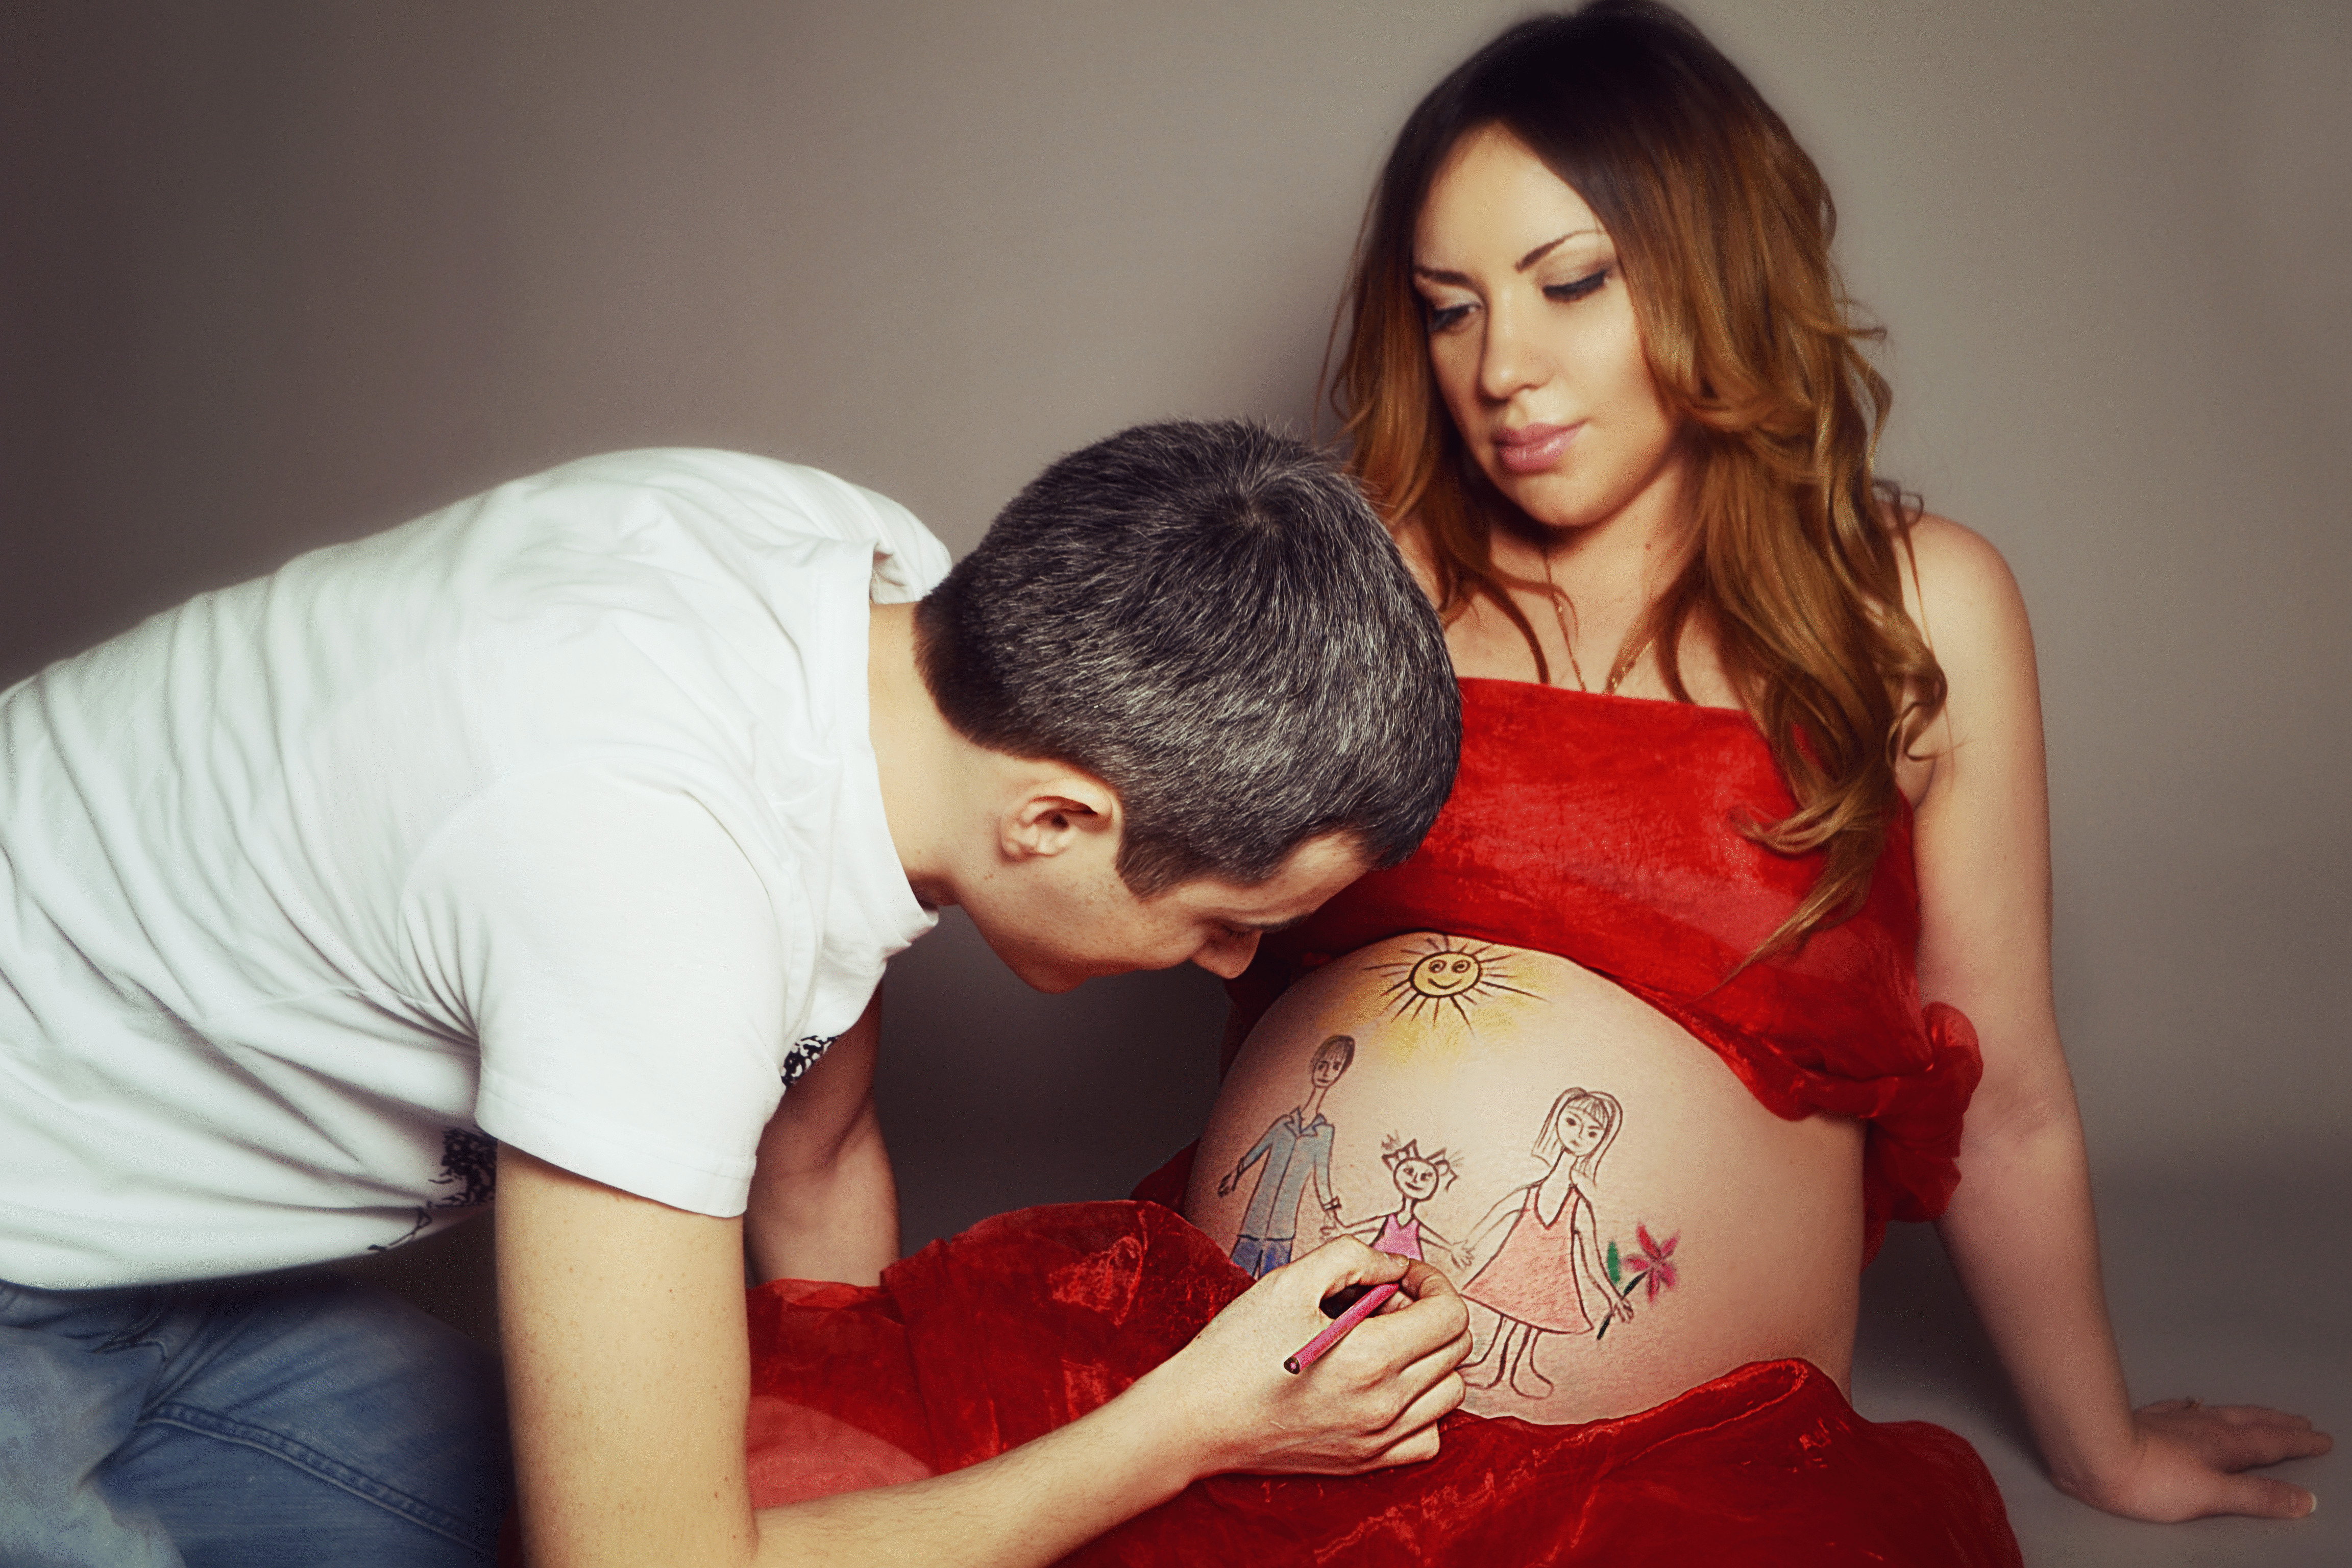 Внимание отца во время беременности – залог здоровья малыша